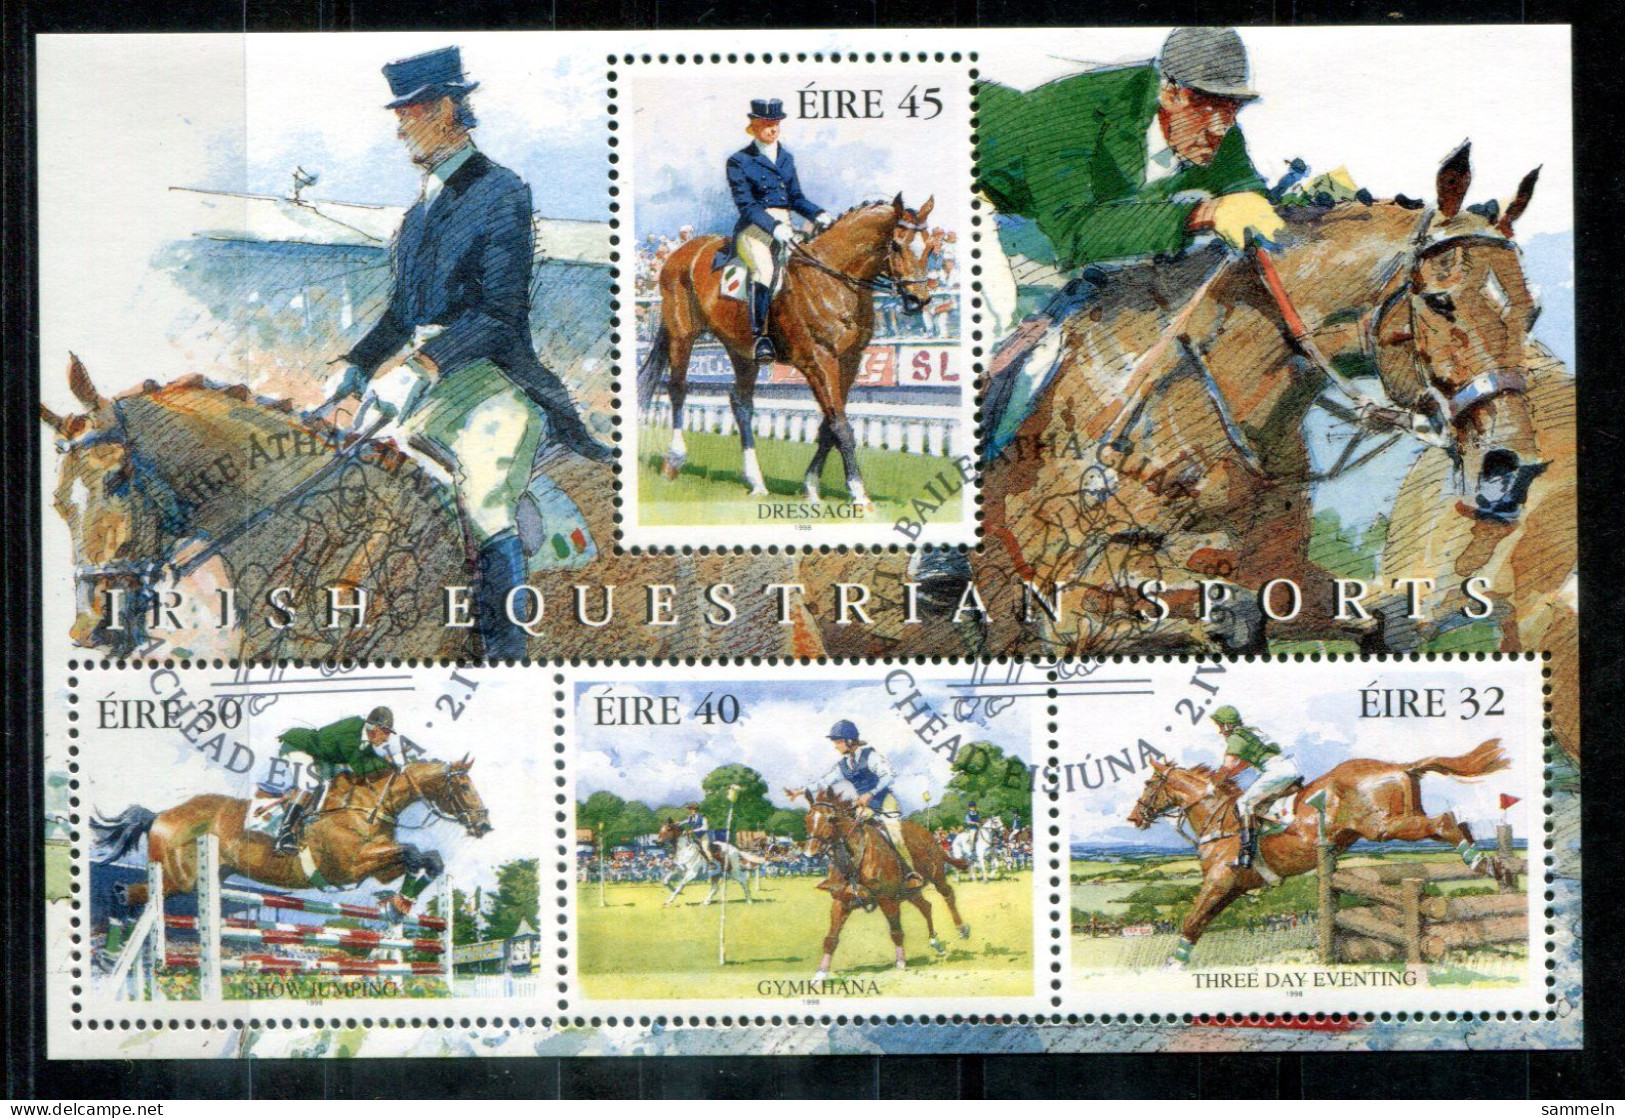 IRLAND Block 27, Bl.27 Canc. - Reitsport, Equestrian, Sport équestre, Pferd, Horse, Cheval   - IRELAND / IRLANDE - Blocks & Kleinbögen